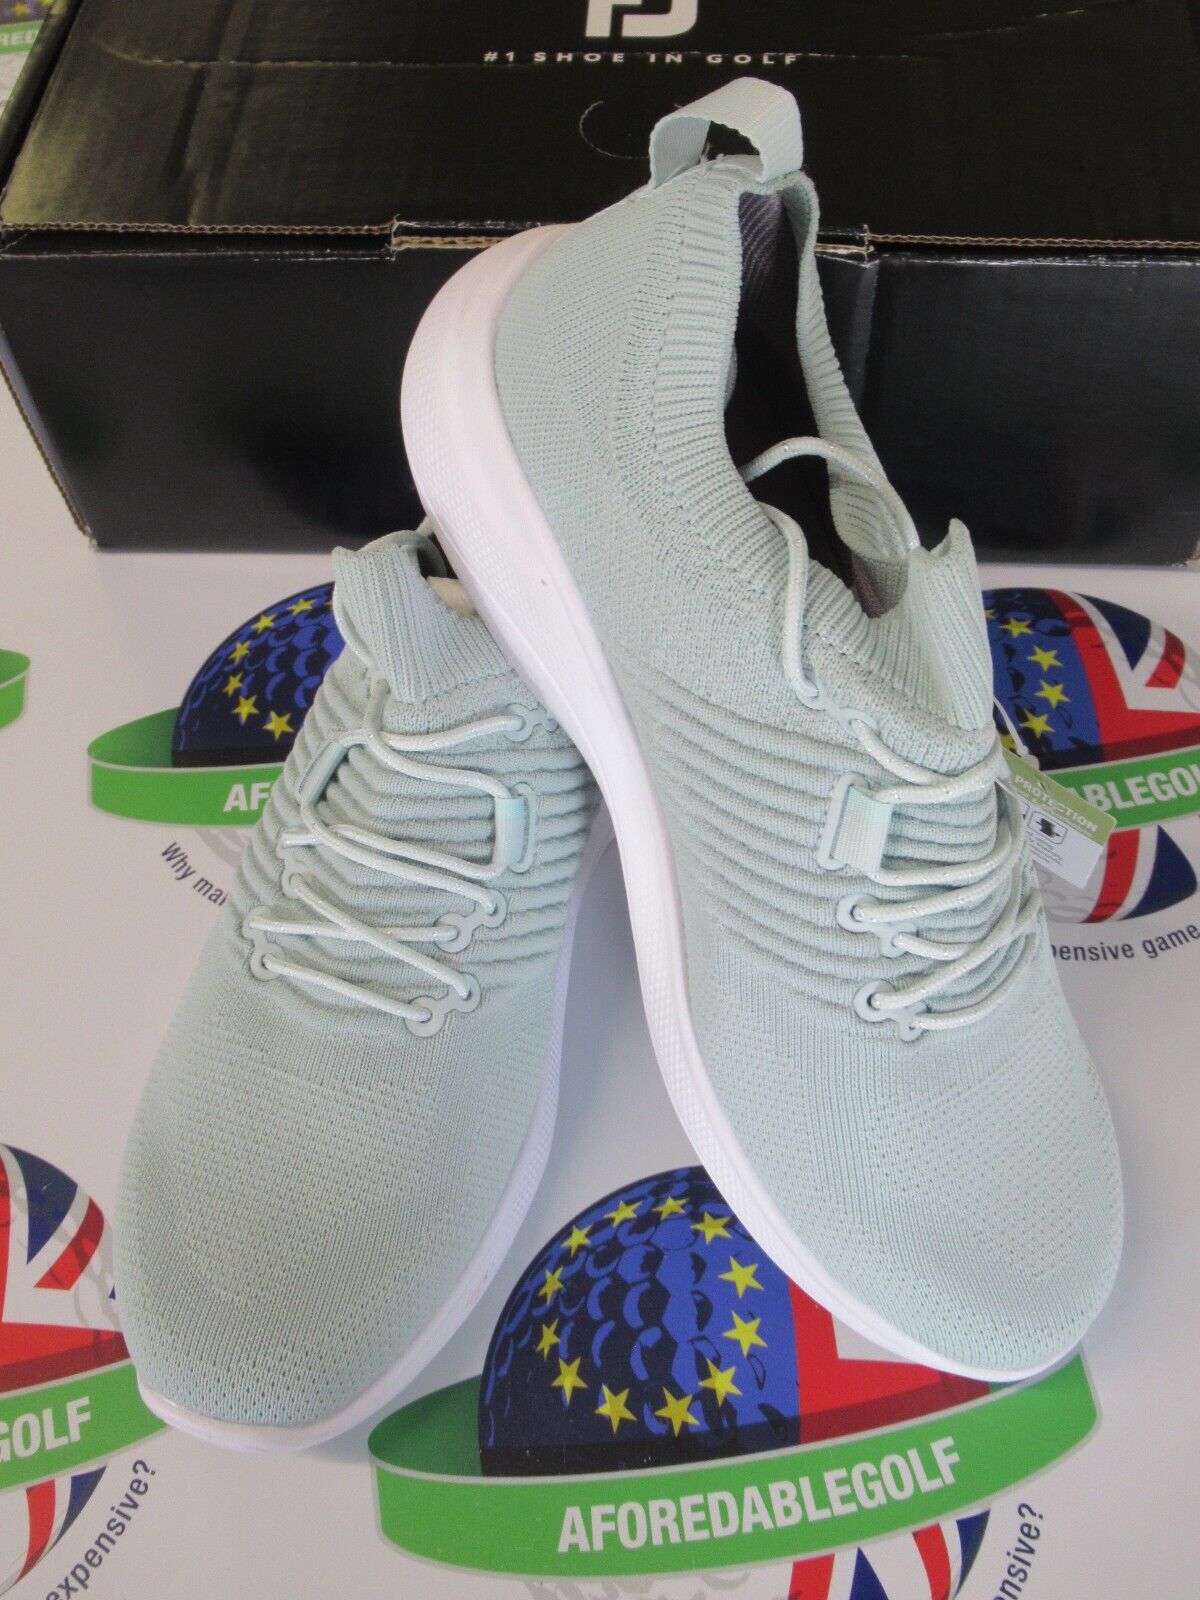 footjoy flex xp womens golf shoes turquoise/white 95334k uk size 6.5 medium